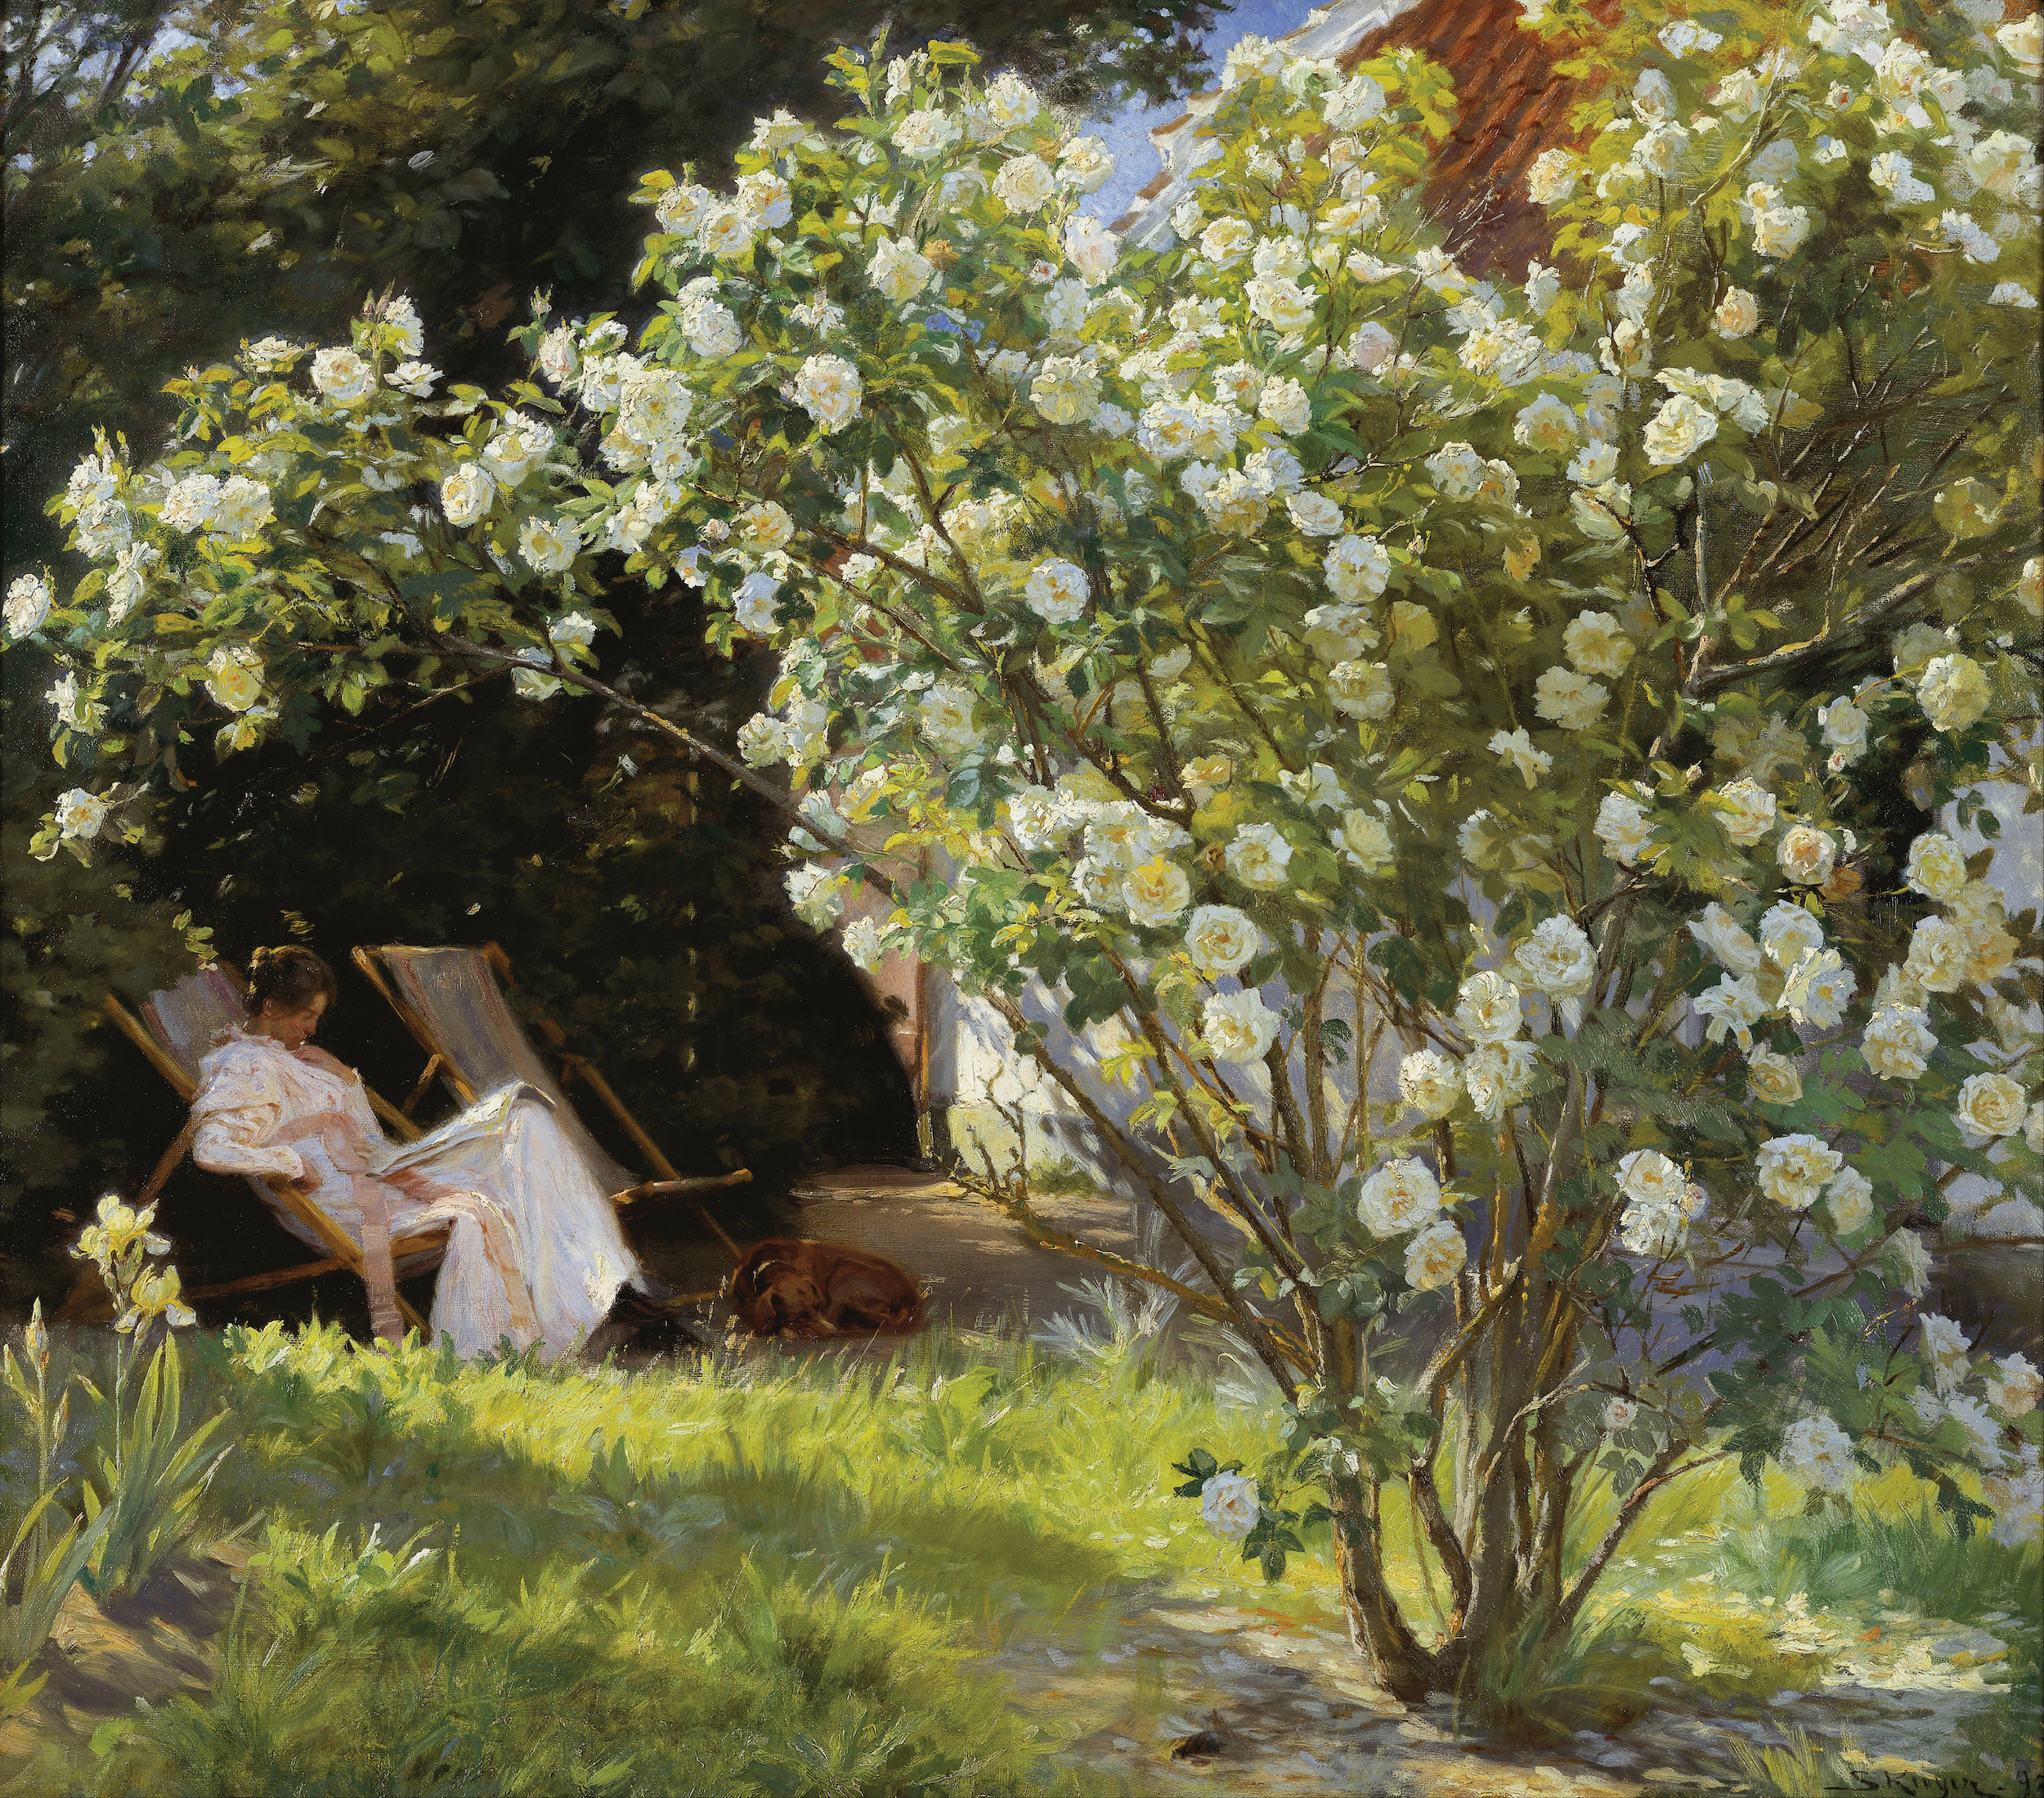 ماري كروير جالسةً على كرسي قابل للطي في الحديقة إلى جانب بيت السيدة بيندسون by P.S. Krøyer - 1893م - 76.5 x 67.5سم  